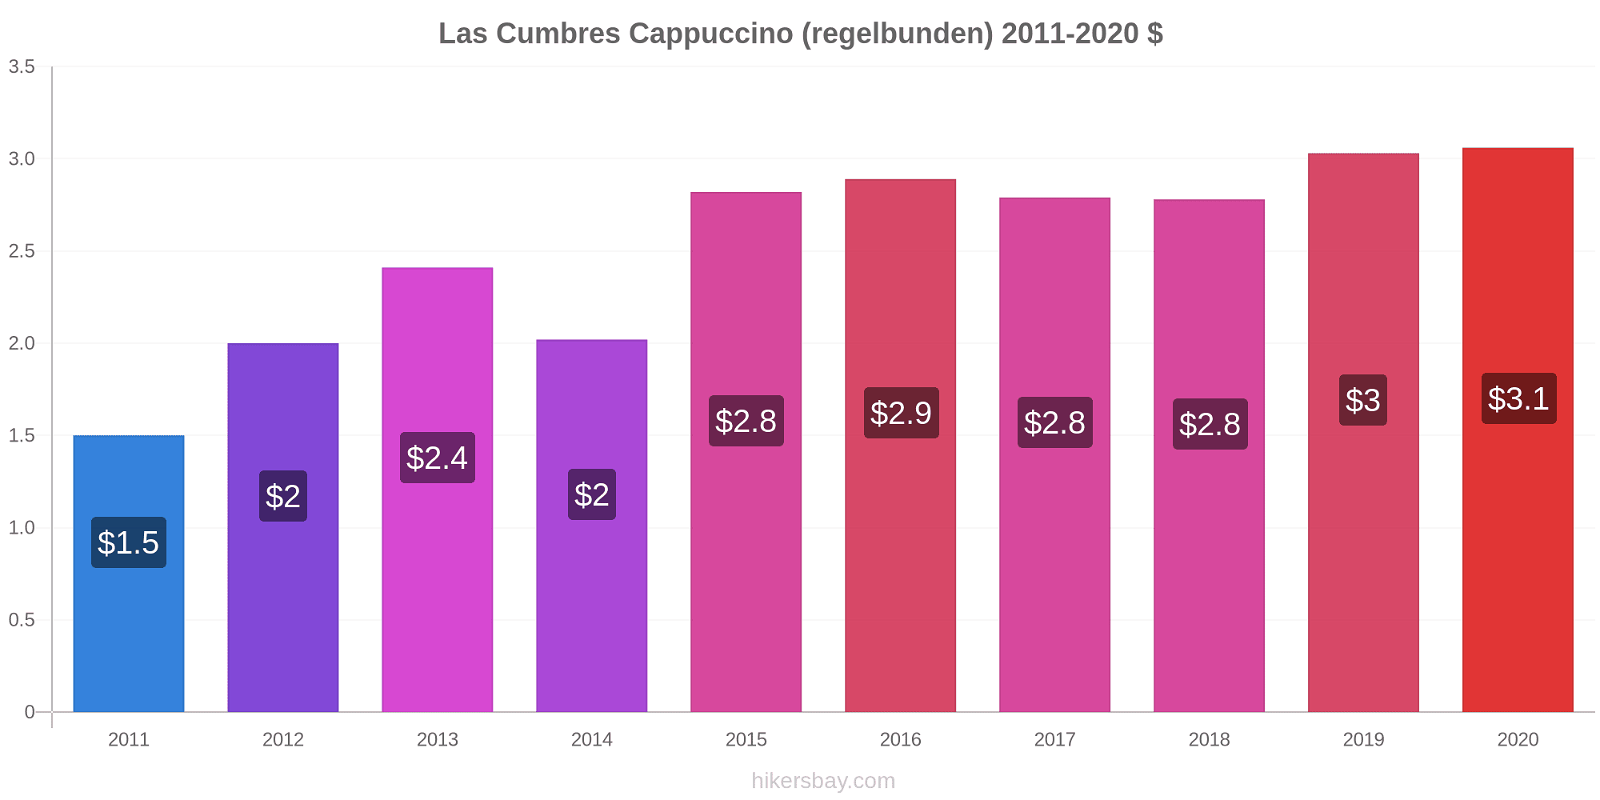 Las Cumbres prisförändringar Cappuccino (regelbunden) hikersbay.com